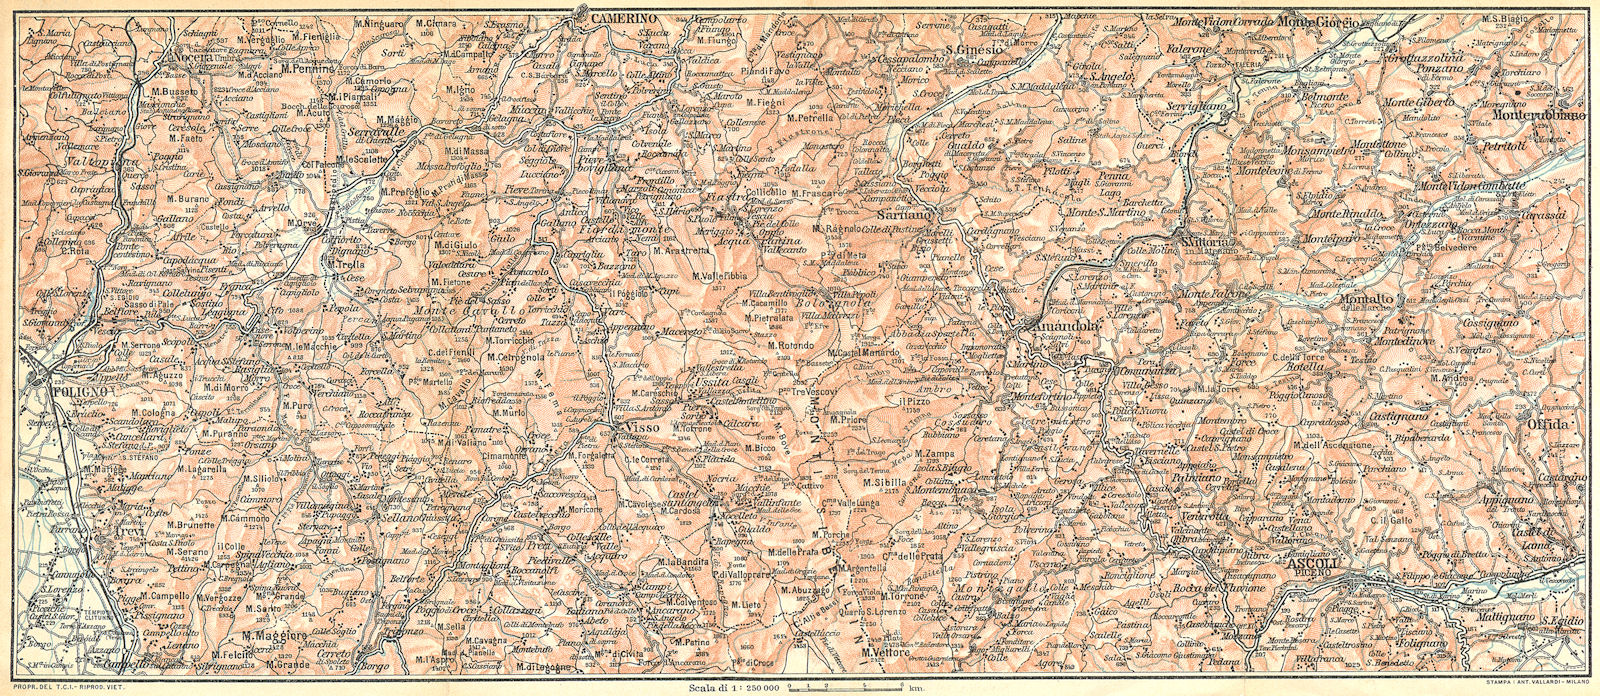 Associate Product ITALY. L'Appennino tra Foligno, Camerino ed Ascoli(I Monti Sibillini) 1924 map